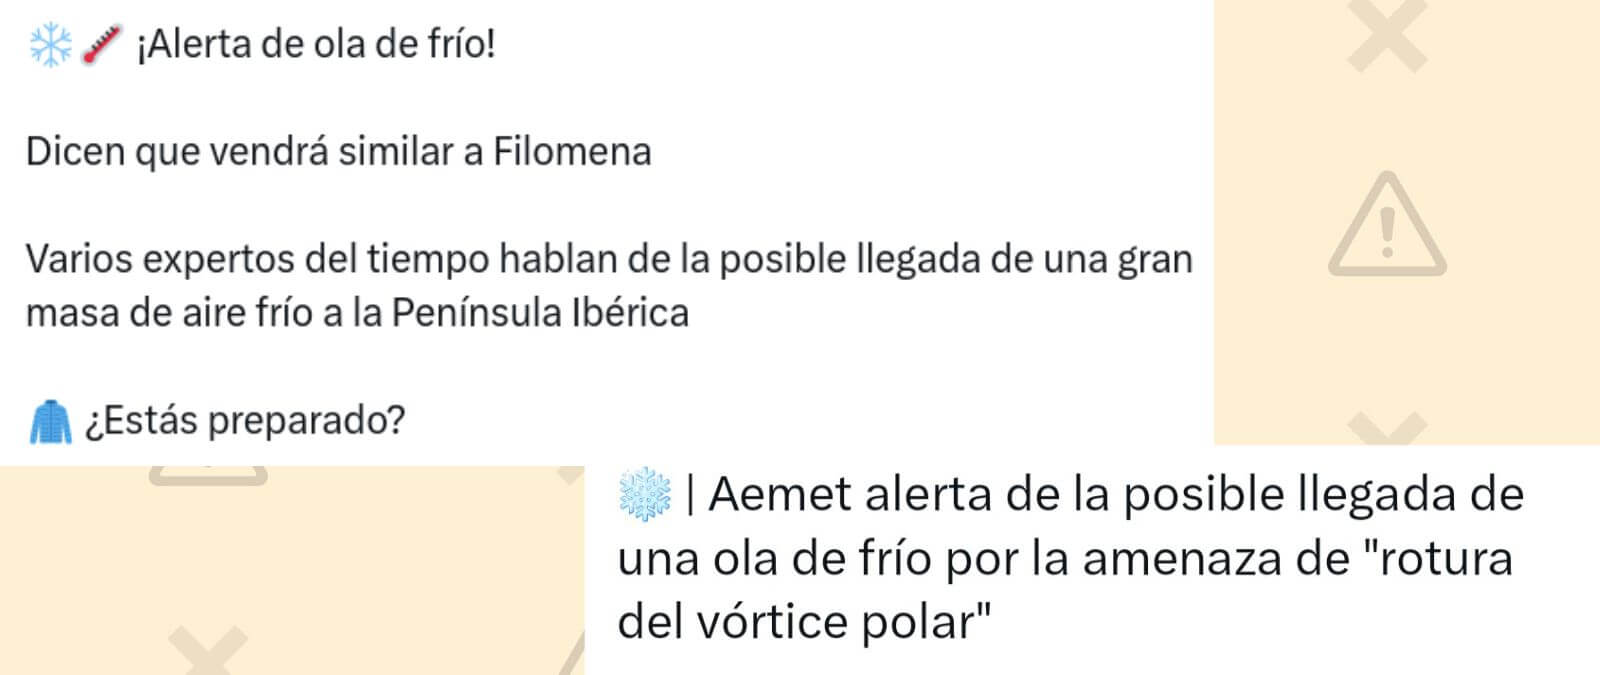 AEMET y una nueva Filomena: la agencia de meteorología NO ha emitido ninguna &quot;alerta por ola de frío&quot; a 28 de diciembre de 2023